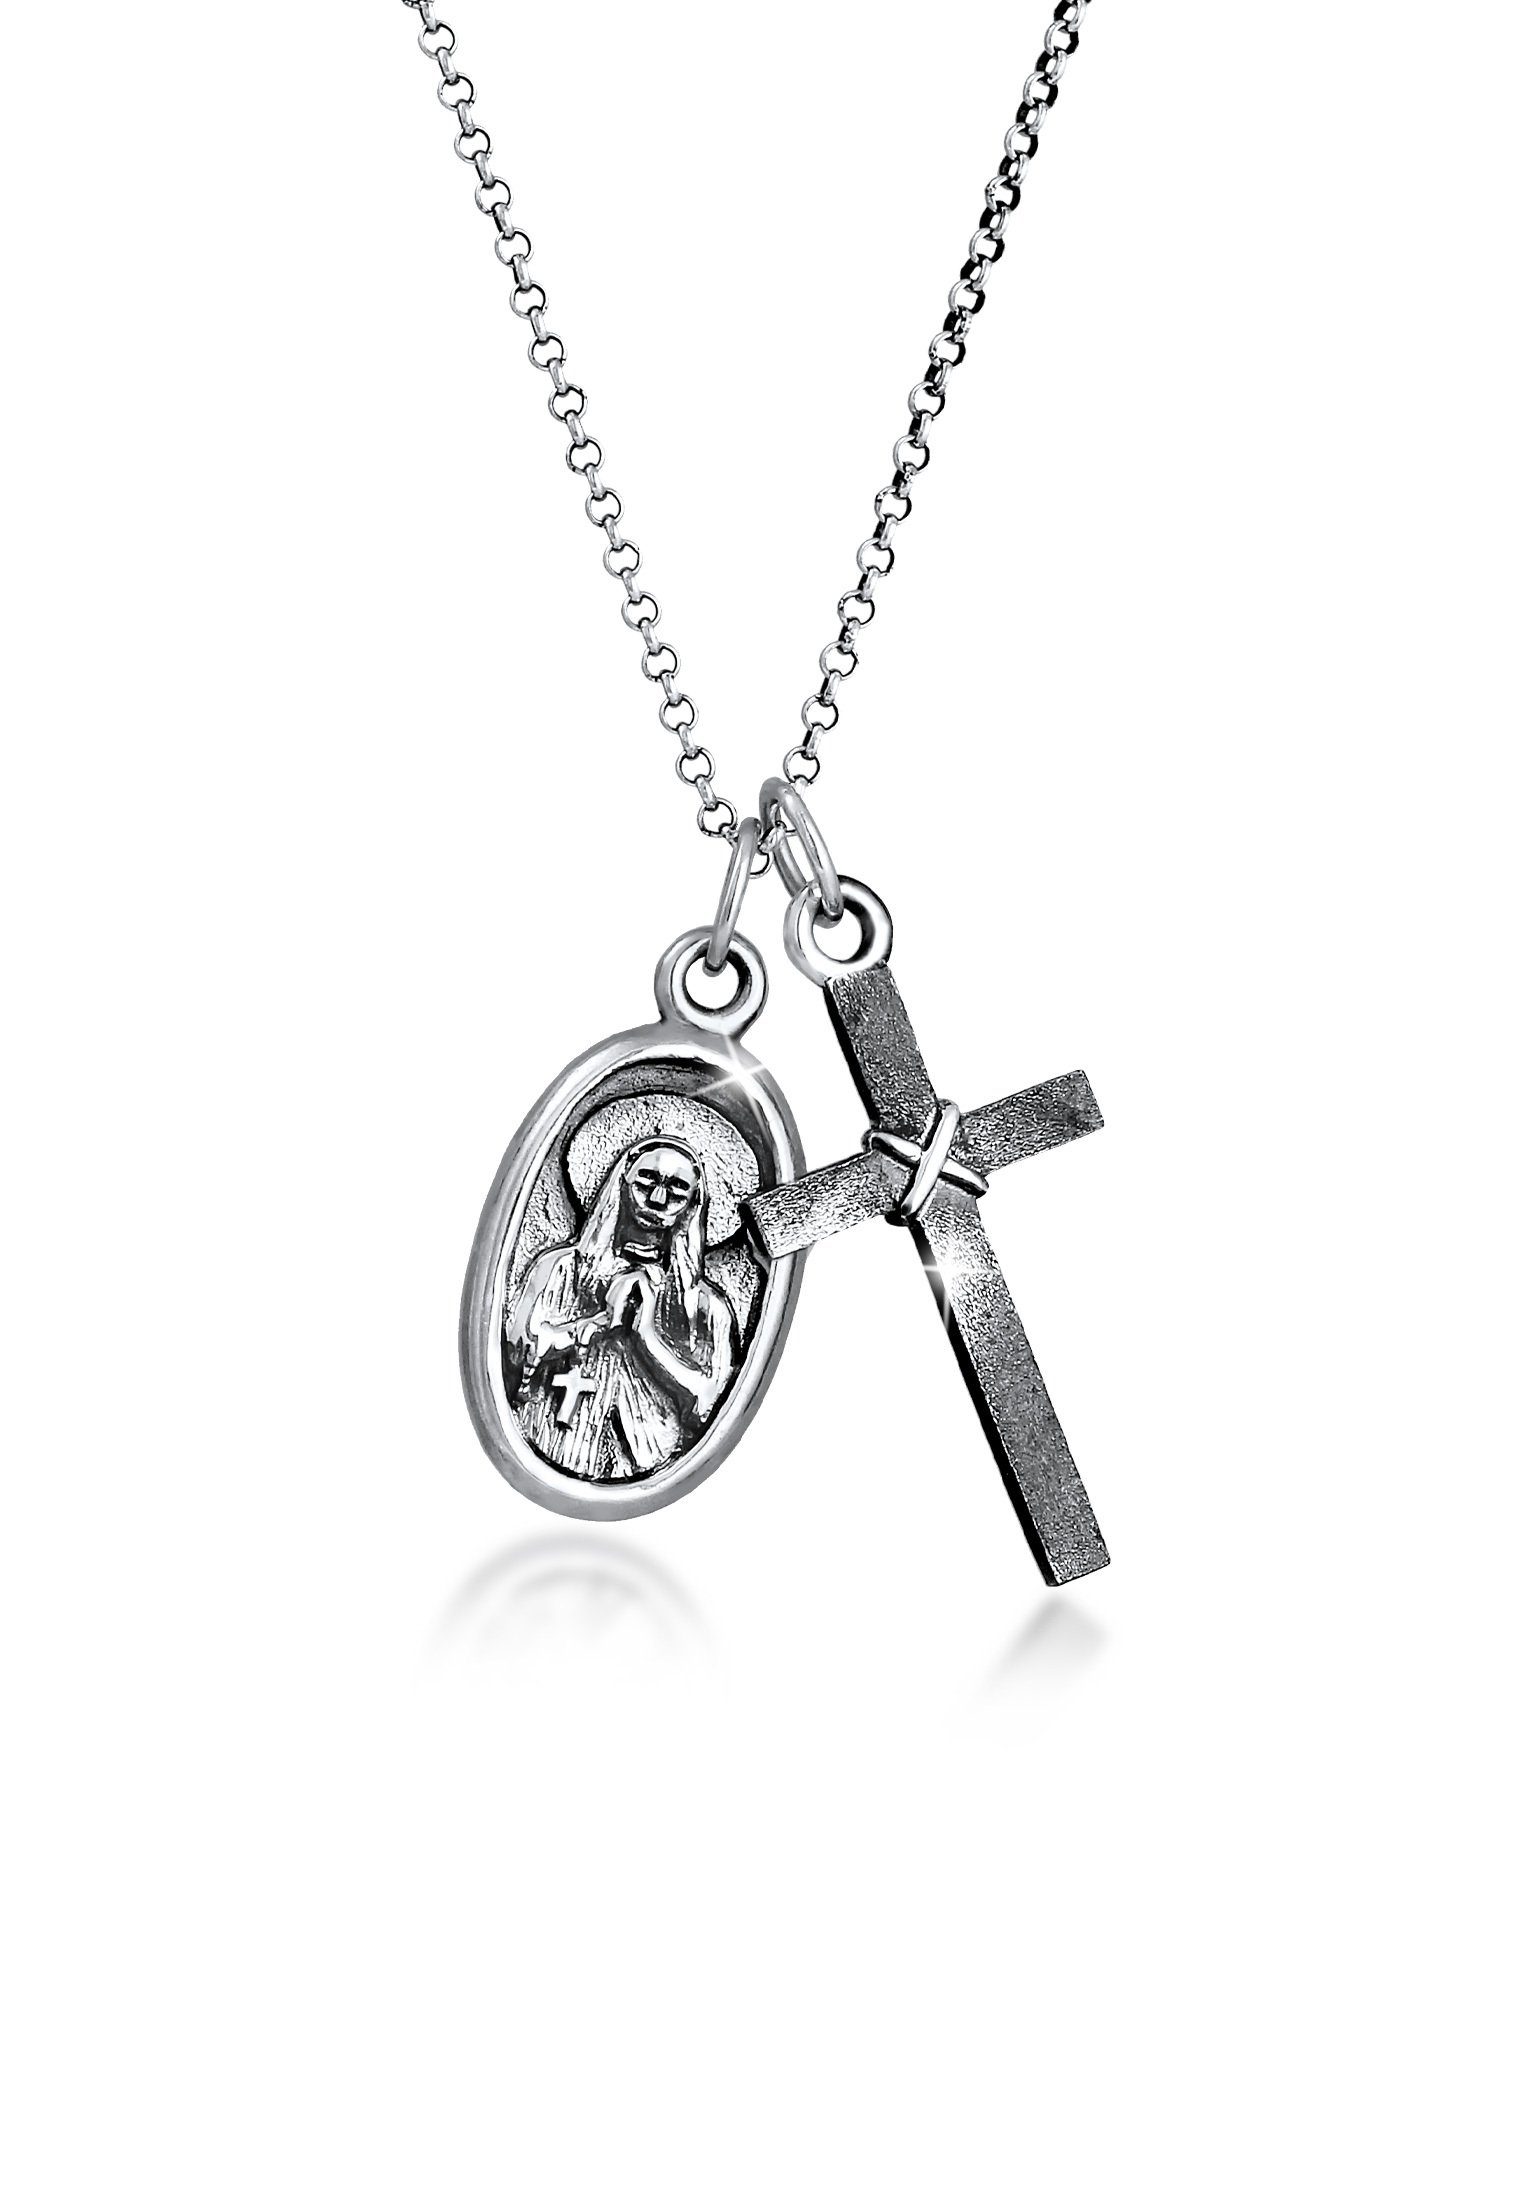 Kuzzoi Lange Kette Herren Marienbild Kreuz Schutz Symbol 925 Silber, Kreuz